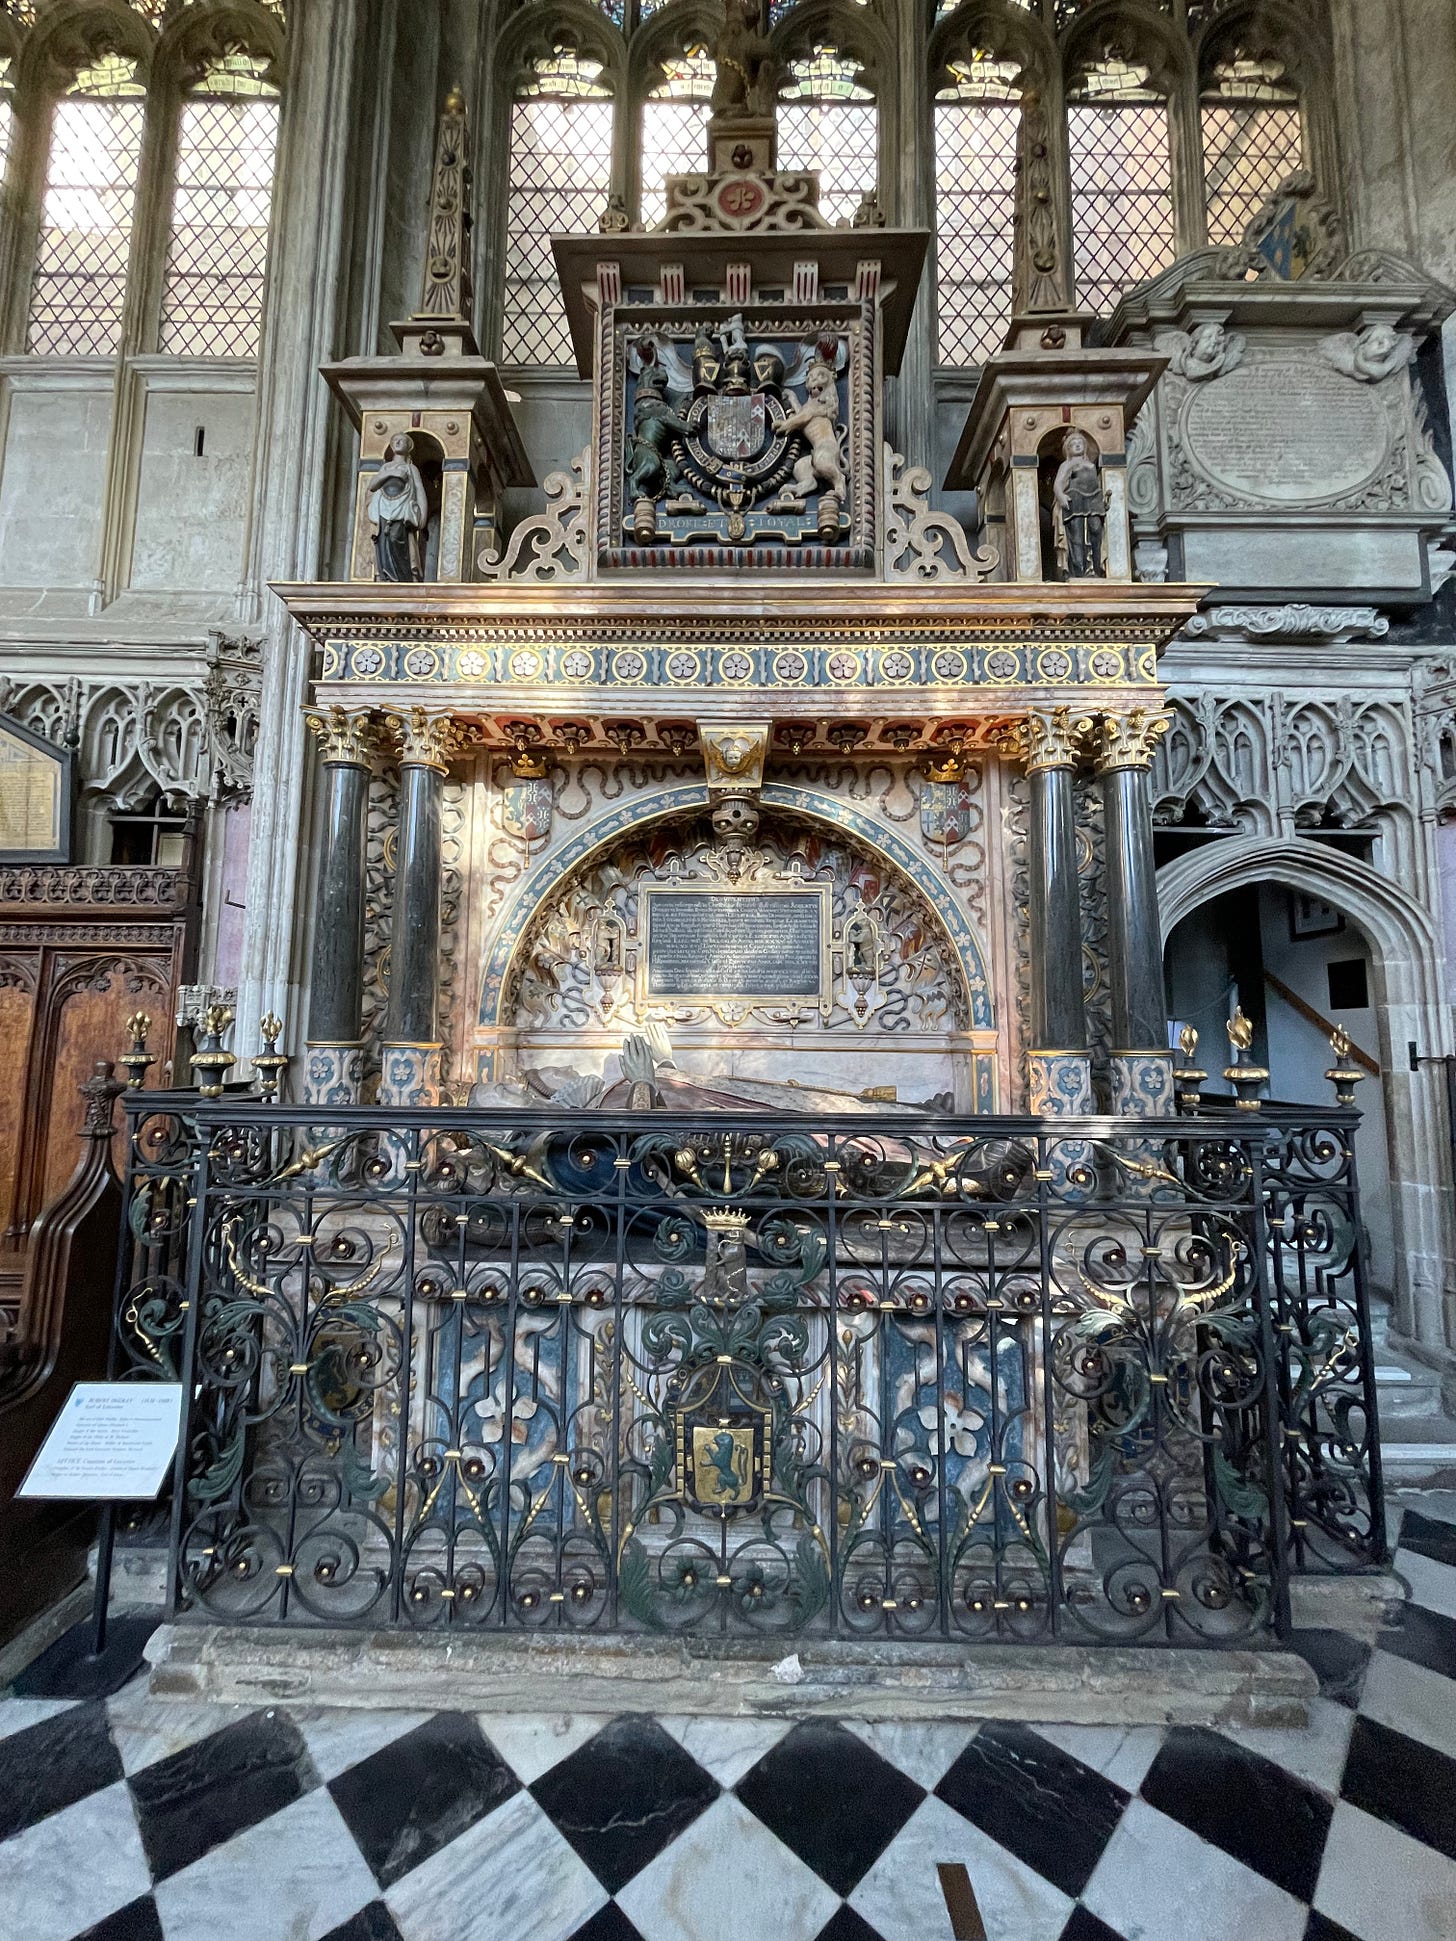 Tomb of Robert Dudley